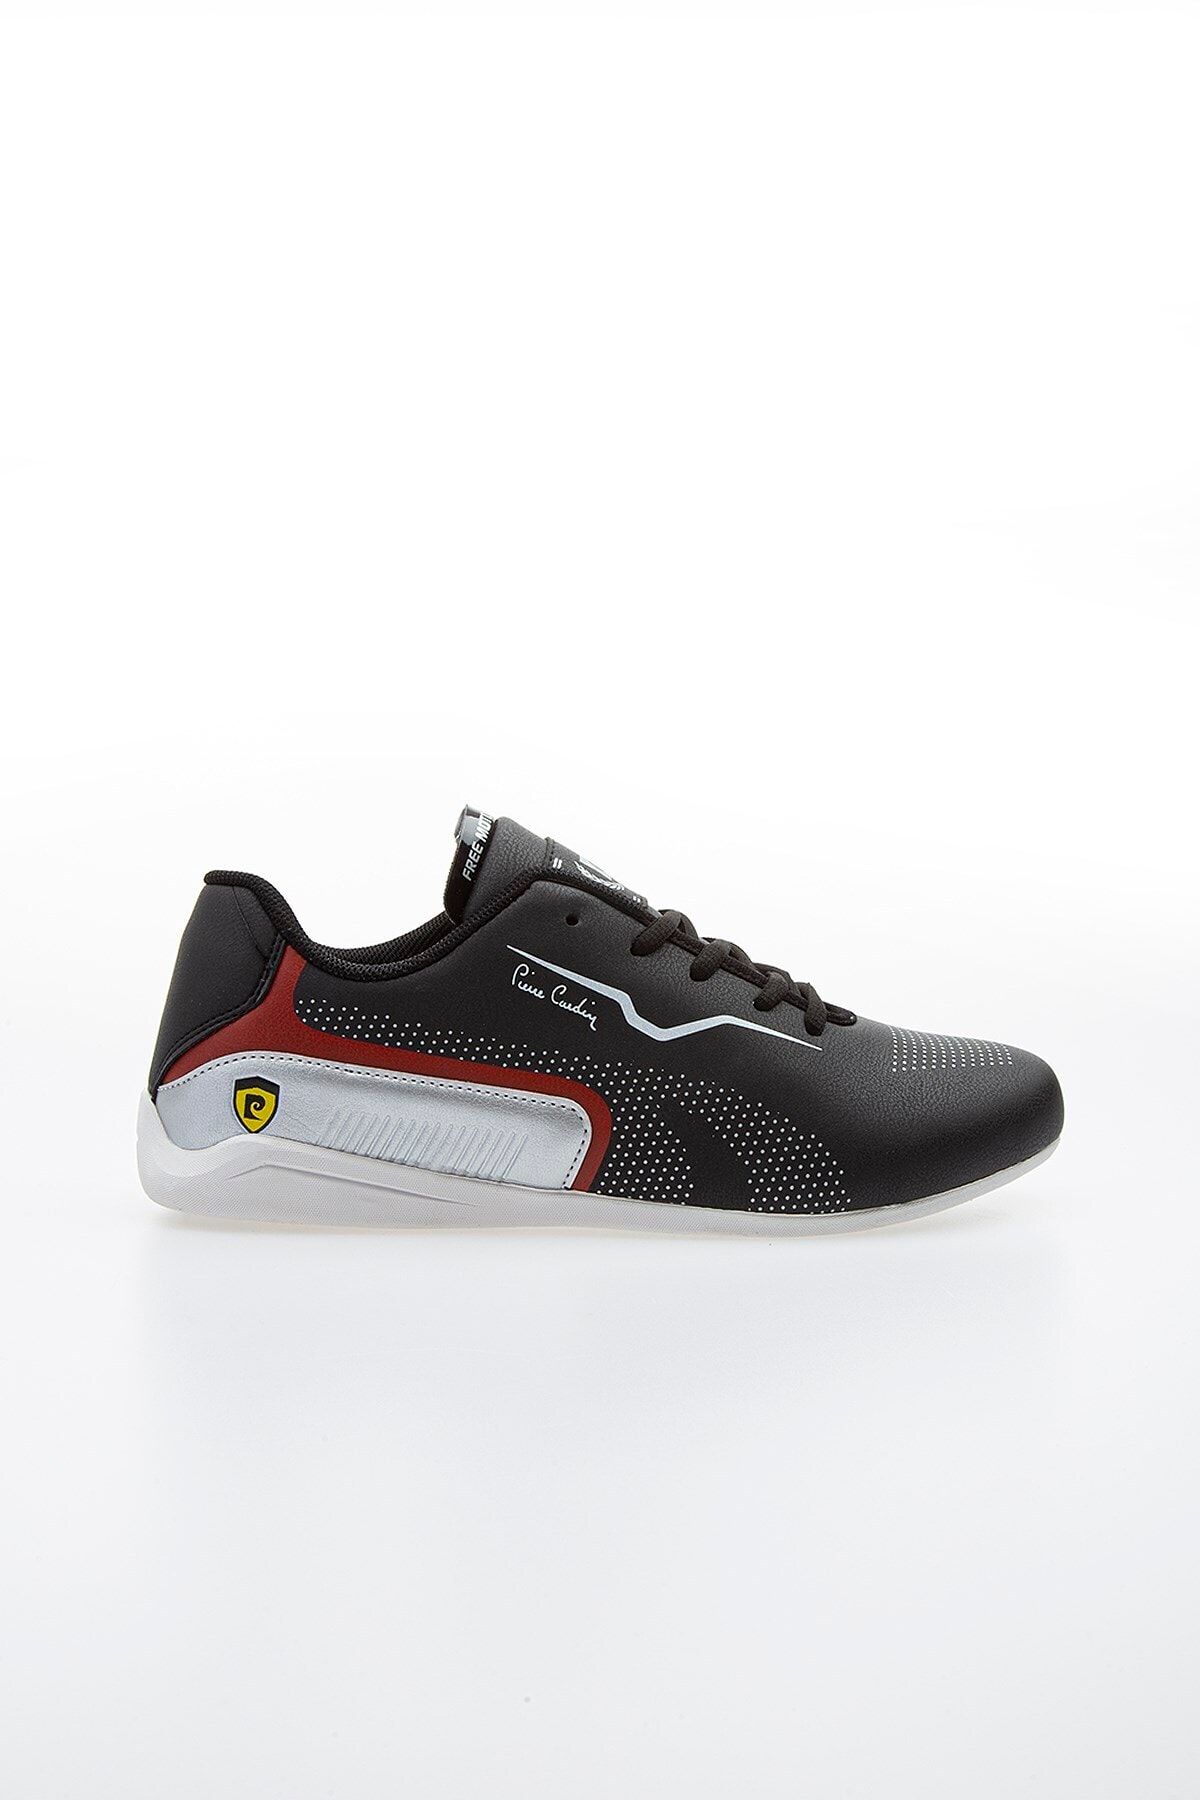 Pierre Cardin PC-30652 Siyah-Beyaz Erkek Spor Ayakkabı